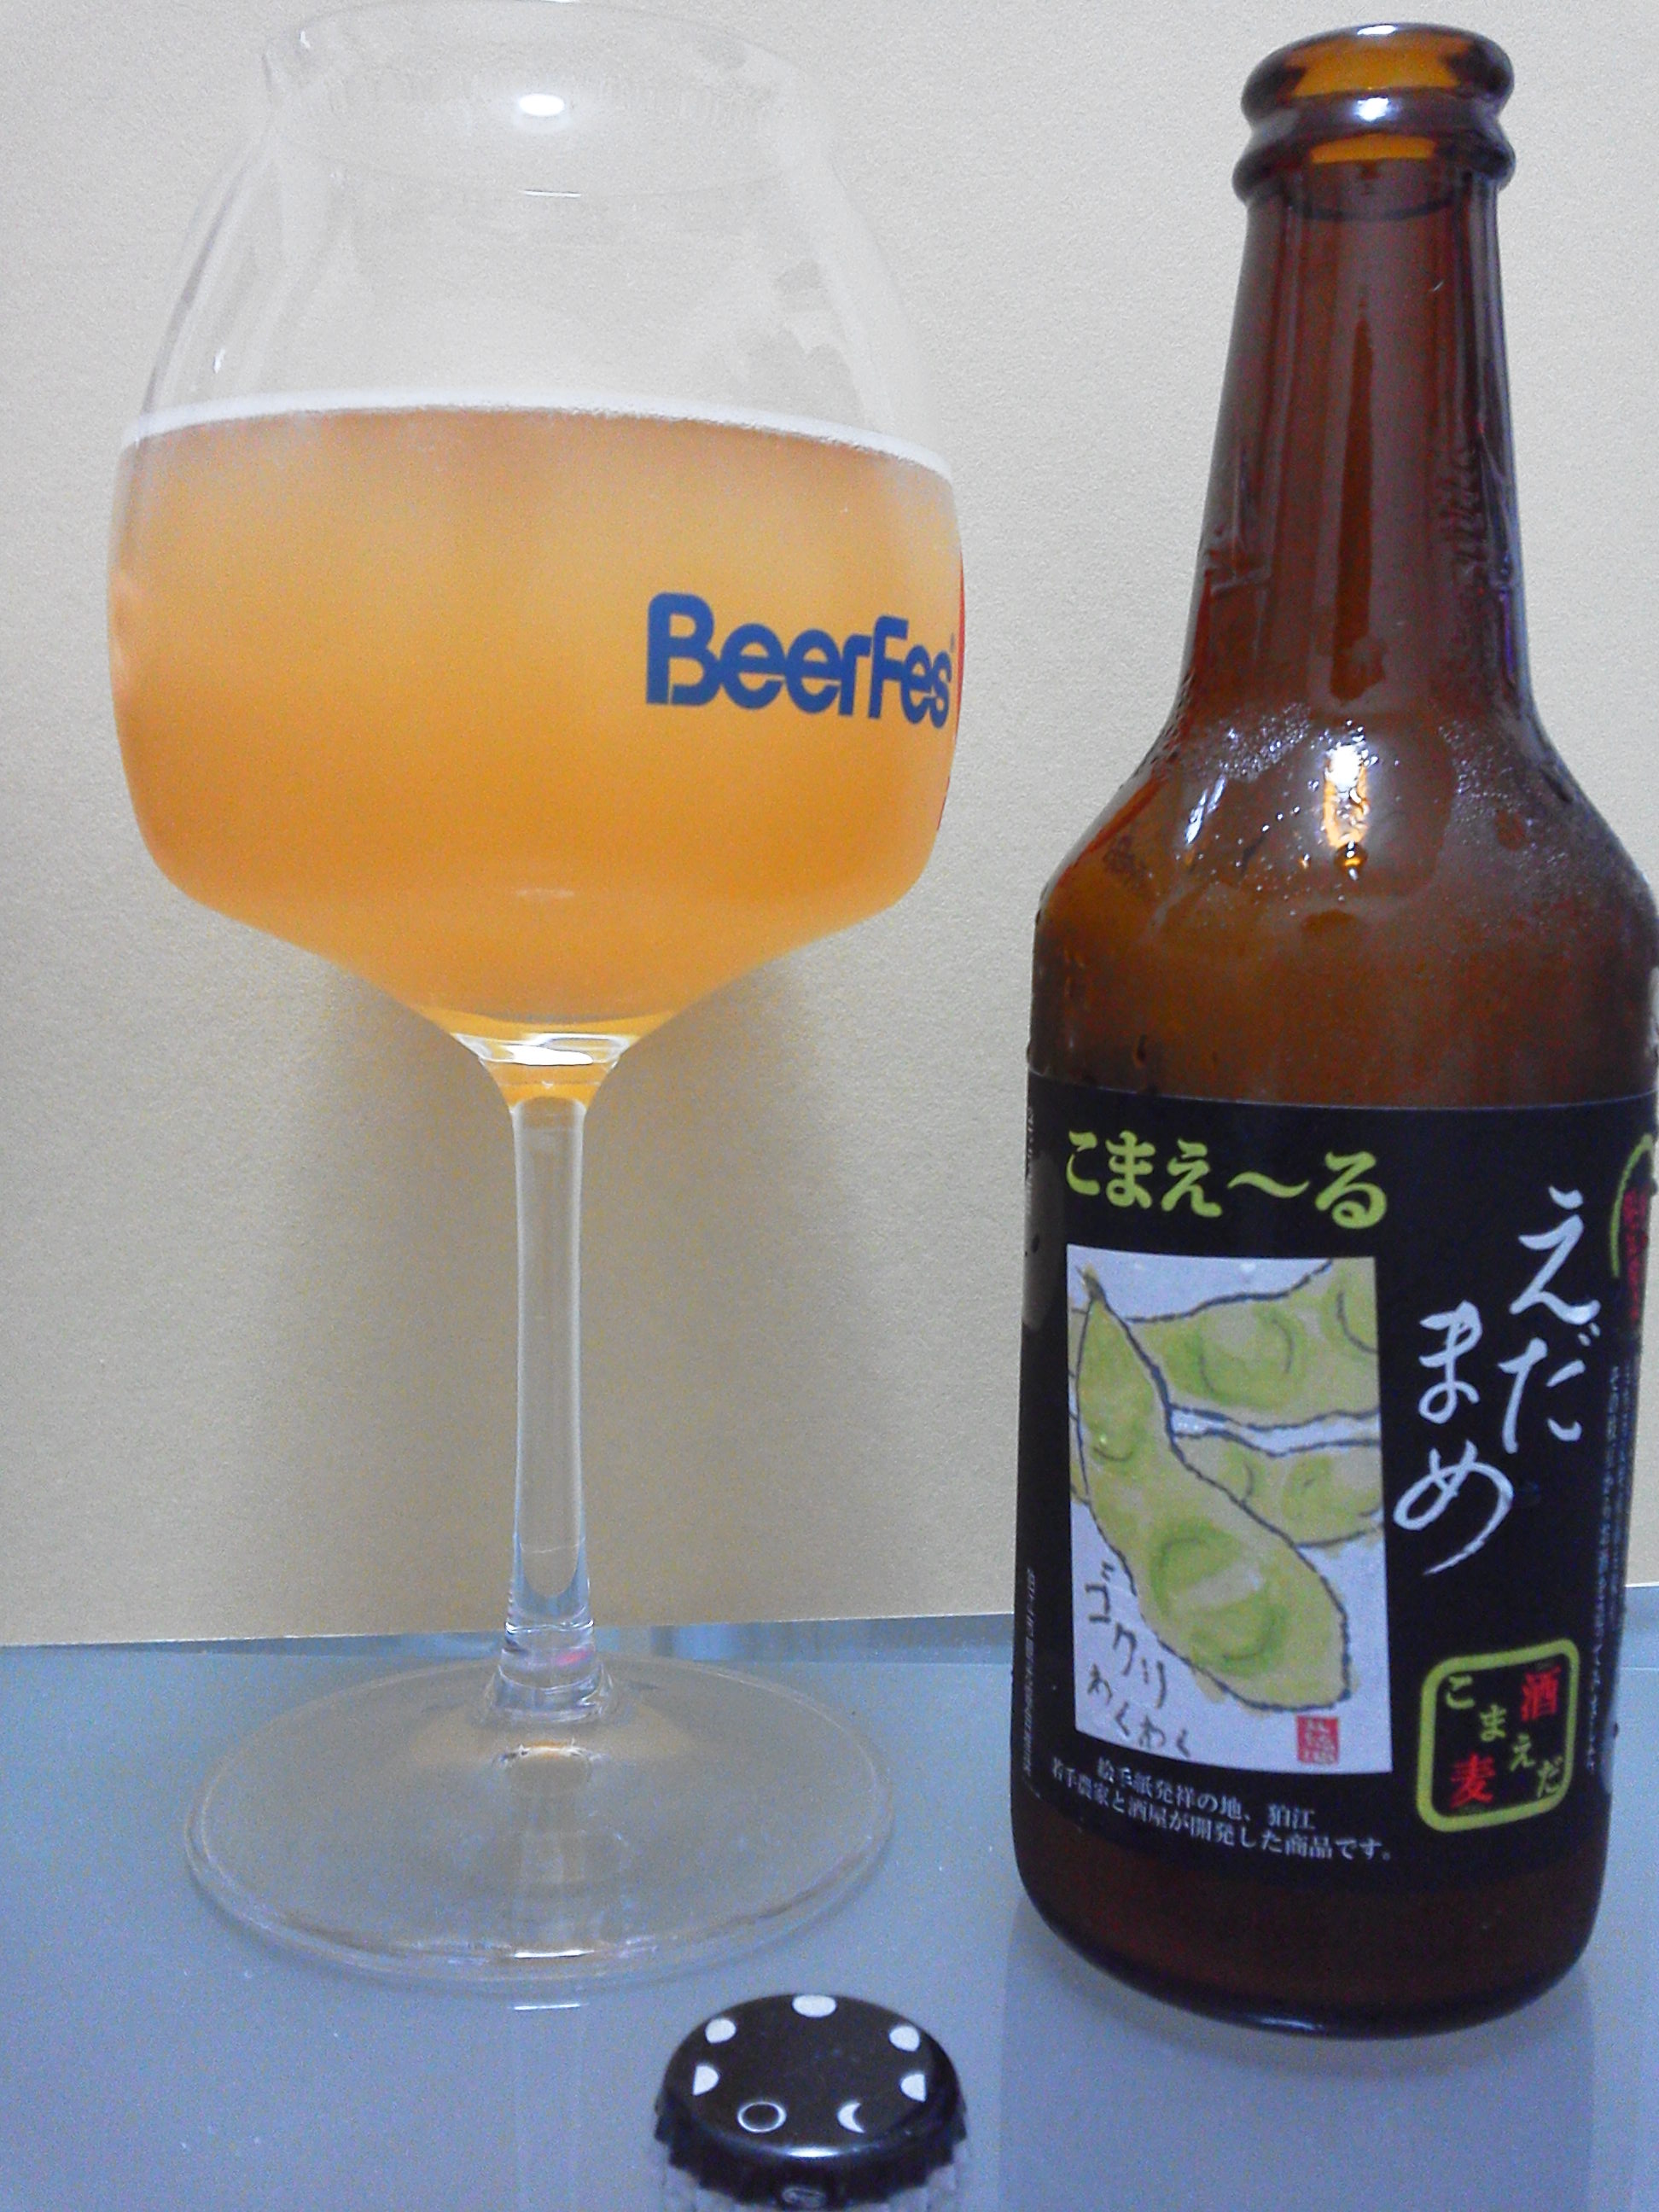 枝豆 と 発泡酒 いえ 枝豆 の 発泡酒です 狛江市生まれの こまえ る 日本ビアジャーナリスト協会